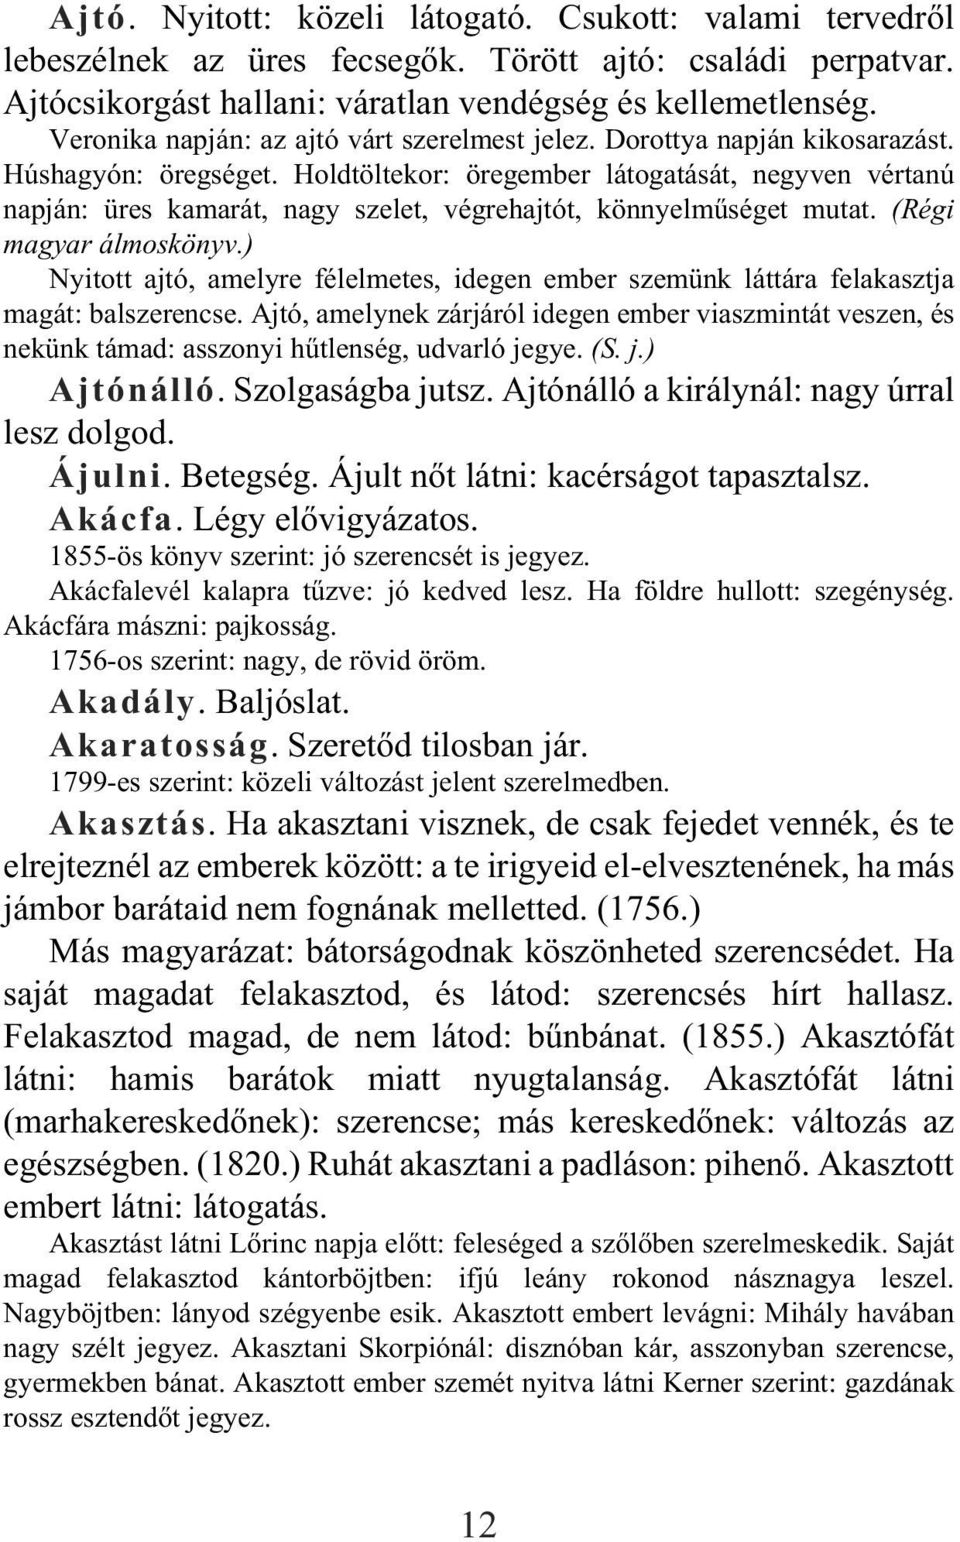 Krúdy Gyula. Álmoskönyv - PDF Ingyenes letöltés